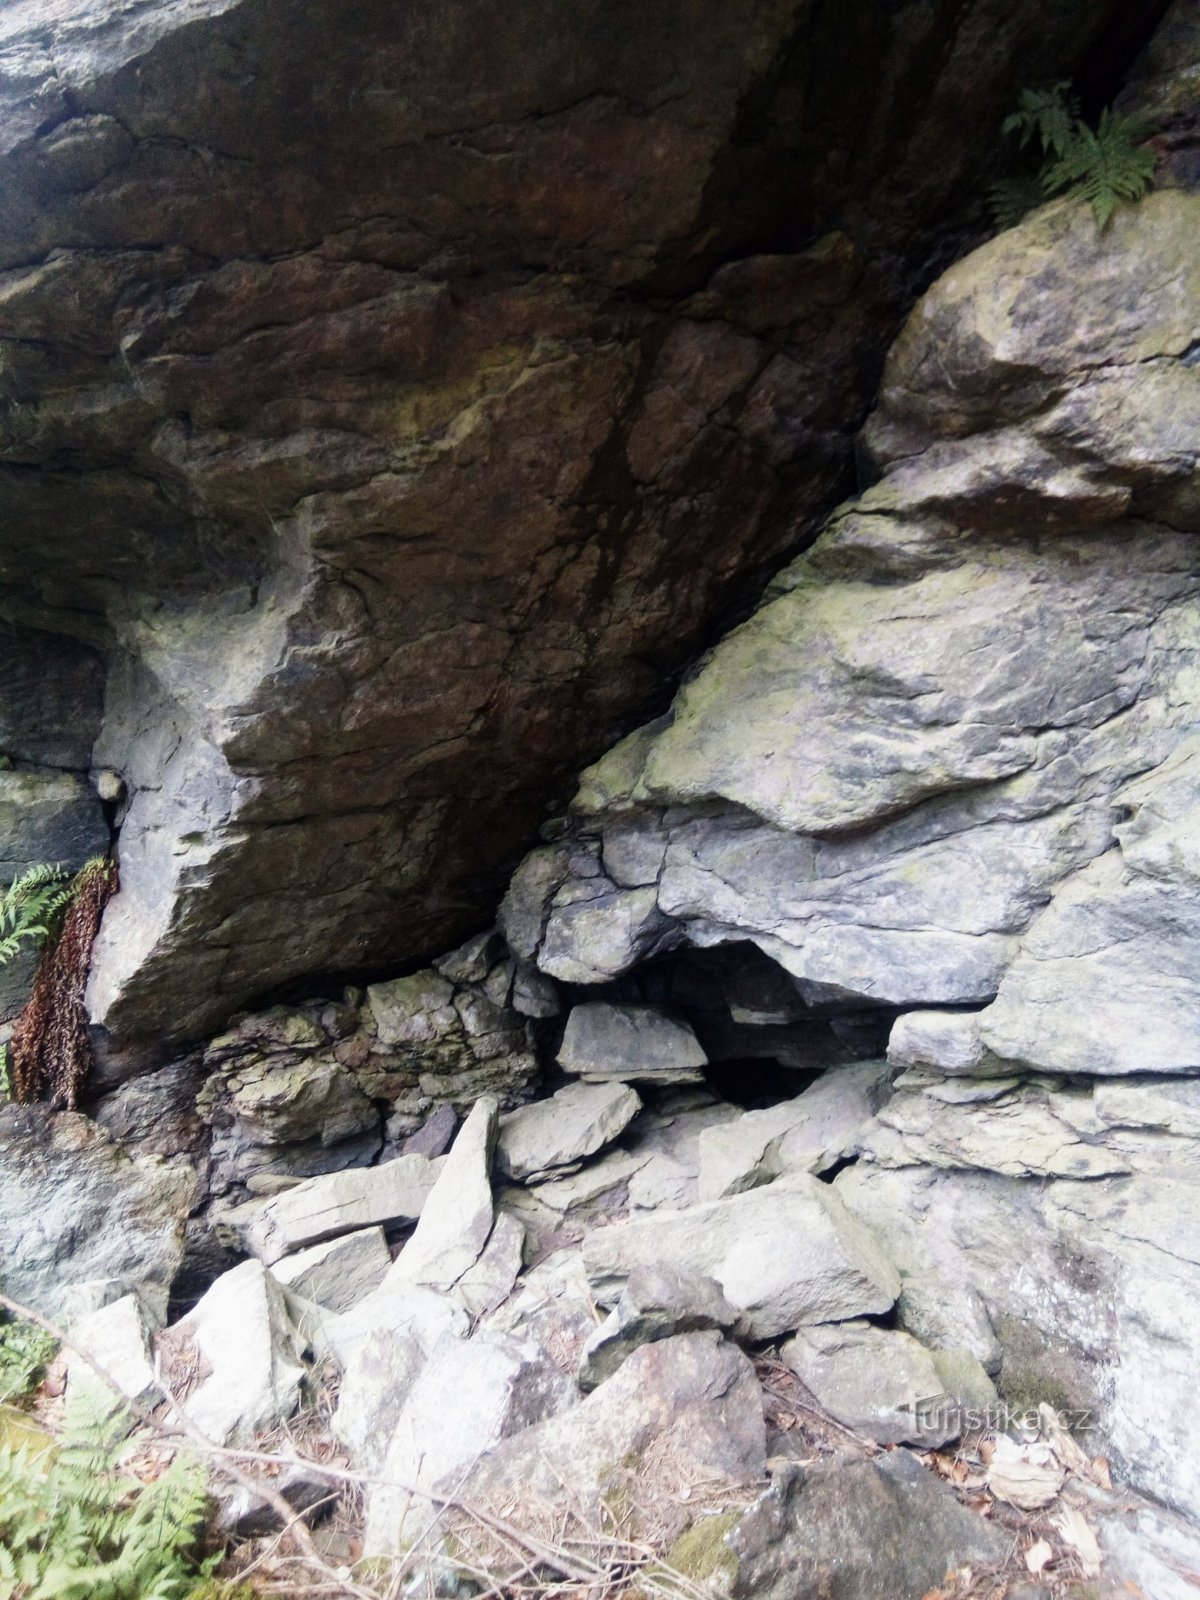 Circuito de trilha educacional Sudslavický ou atrás de rochas, cavernas, escadas e uma velha tília